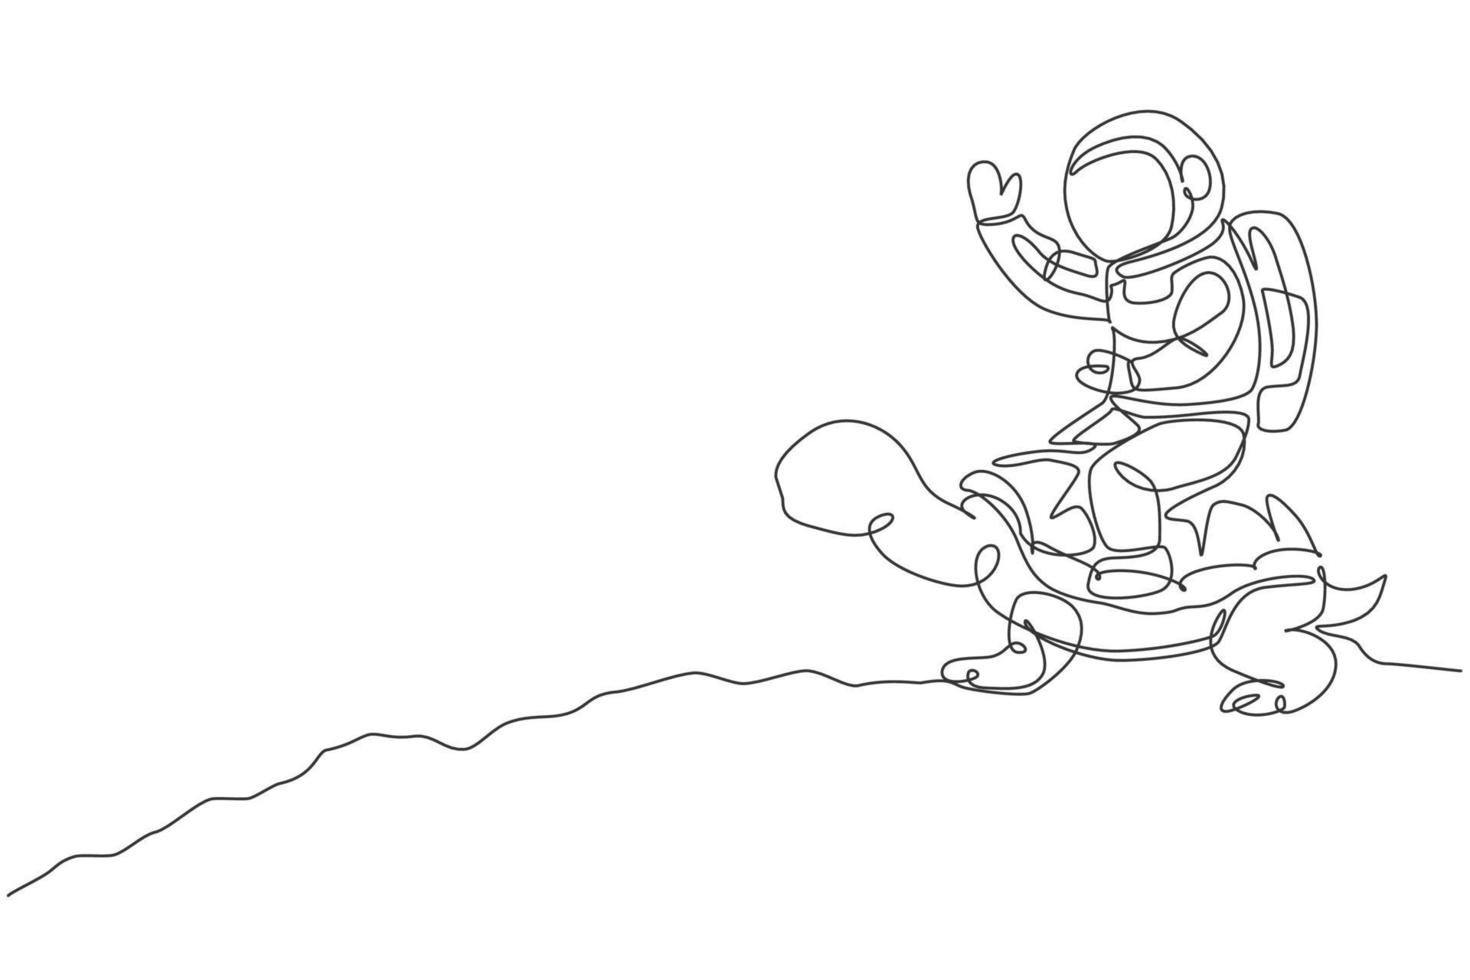 een doorlopende lijntekening van een ruimtevaarder die een wandeling maakt op een schildpad en met de hand zwaait in het maanoppervlak. deep space safari reis concept. dynamische enkele lijn tekenen ontwerp vector illustratie afbeelding